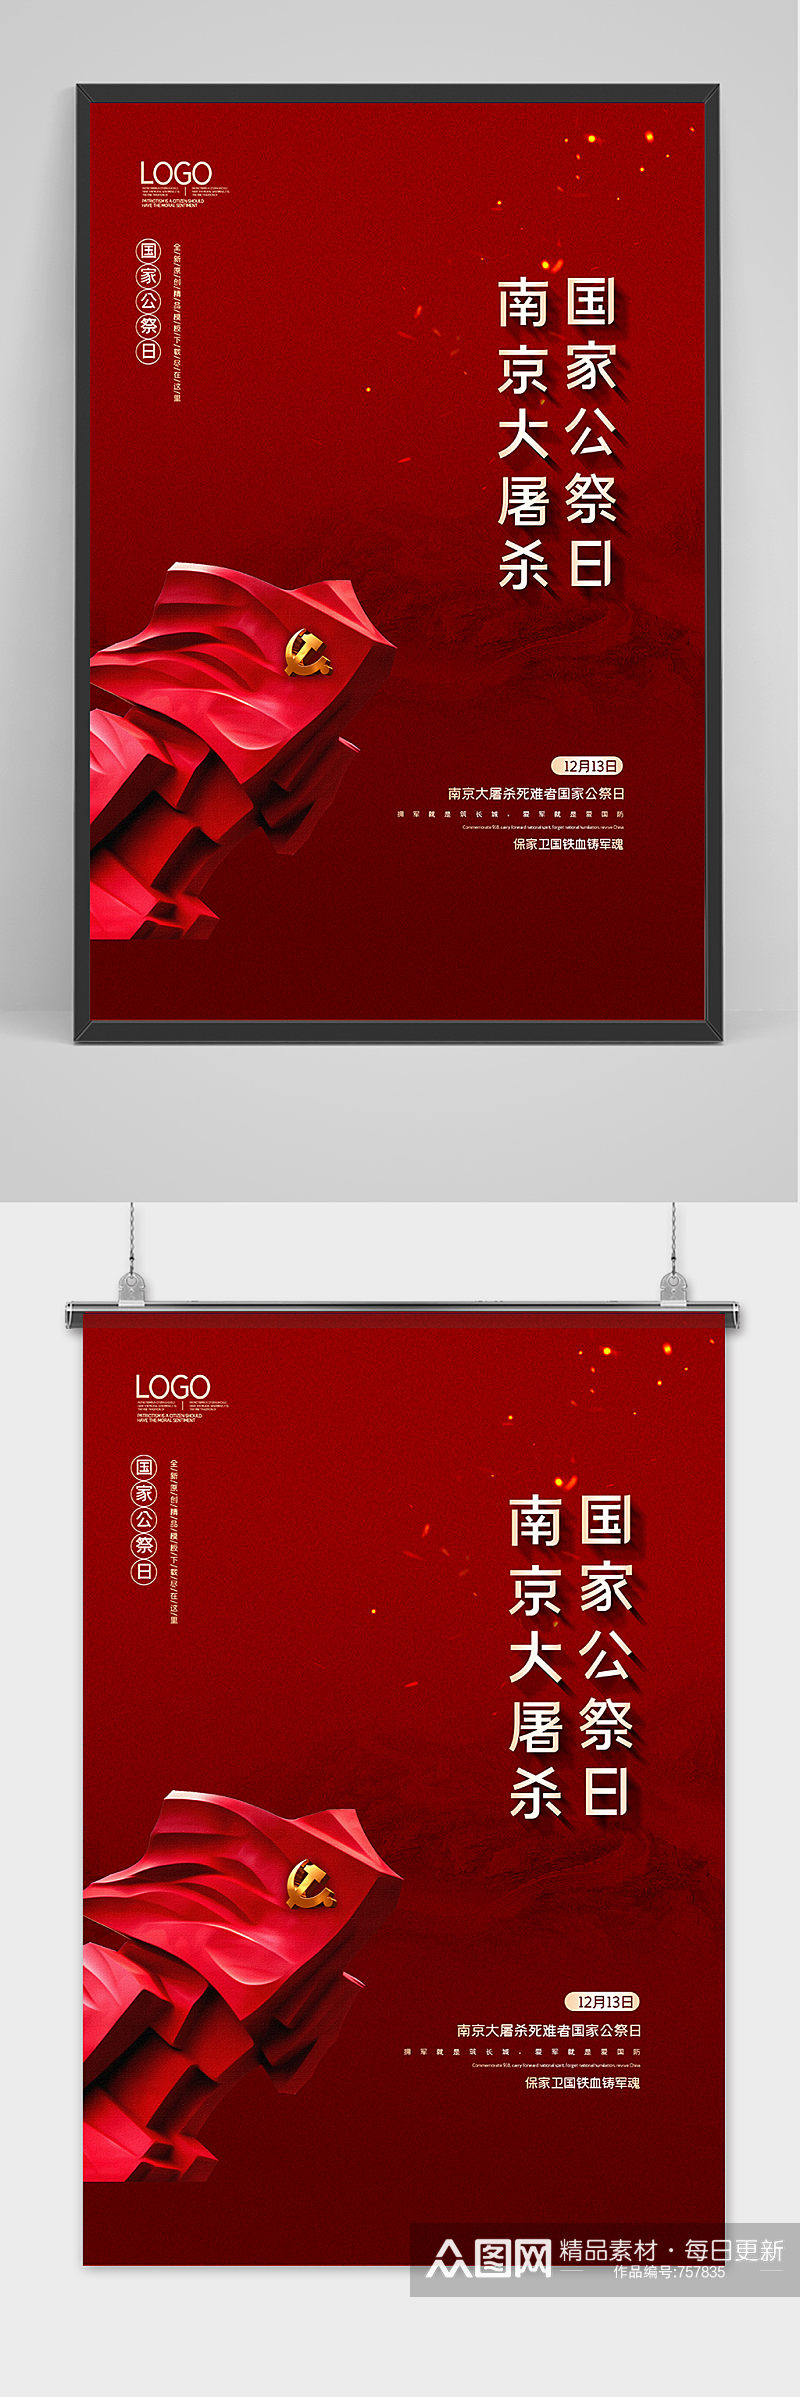 2020红金南京大屠杀党建纪念海报素材